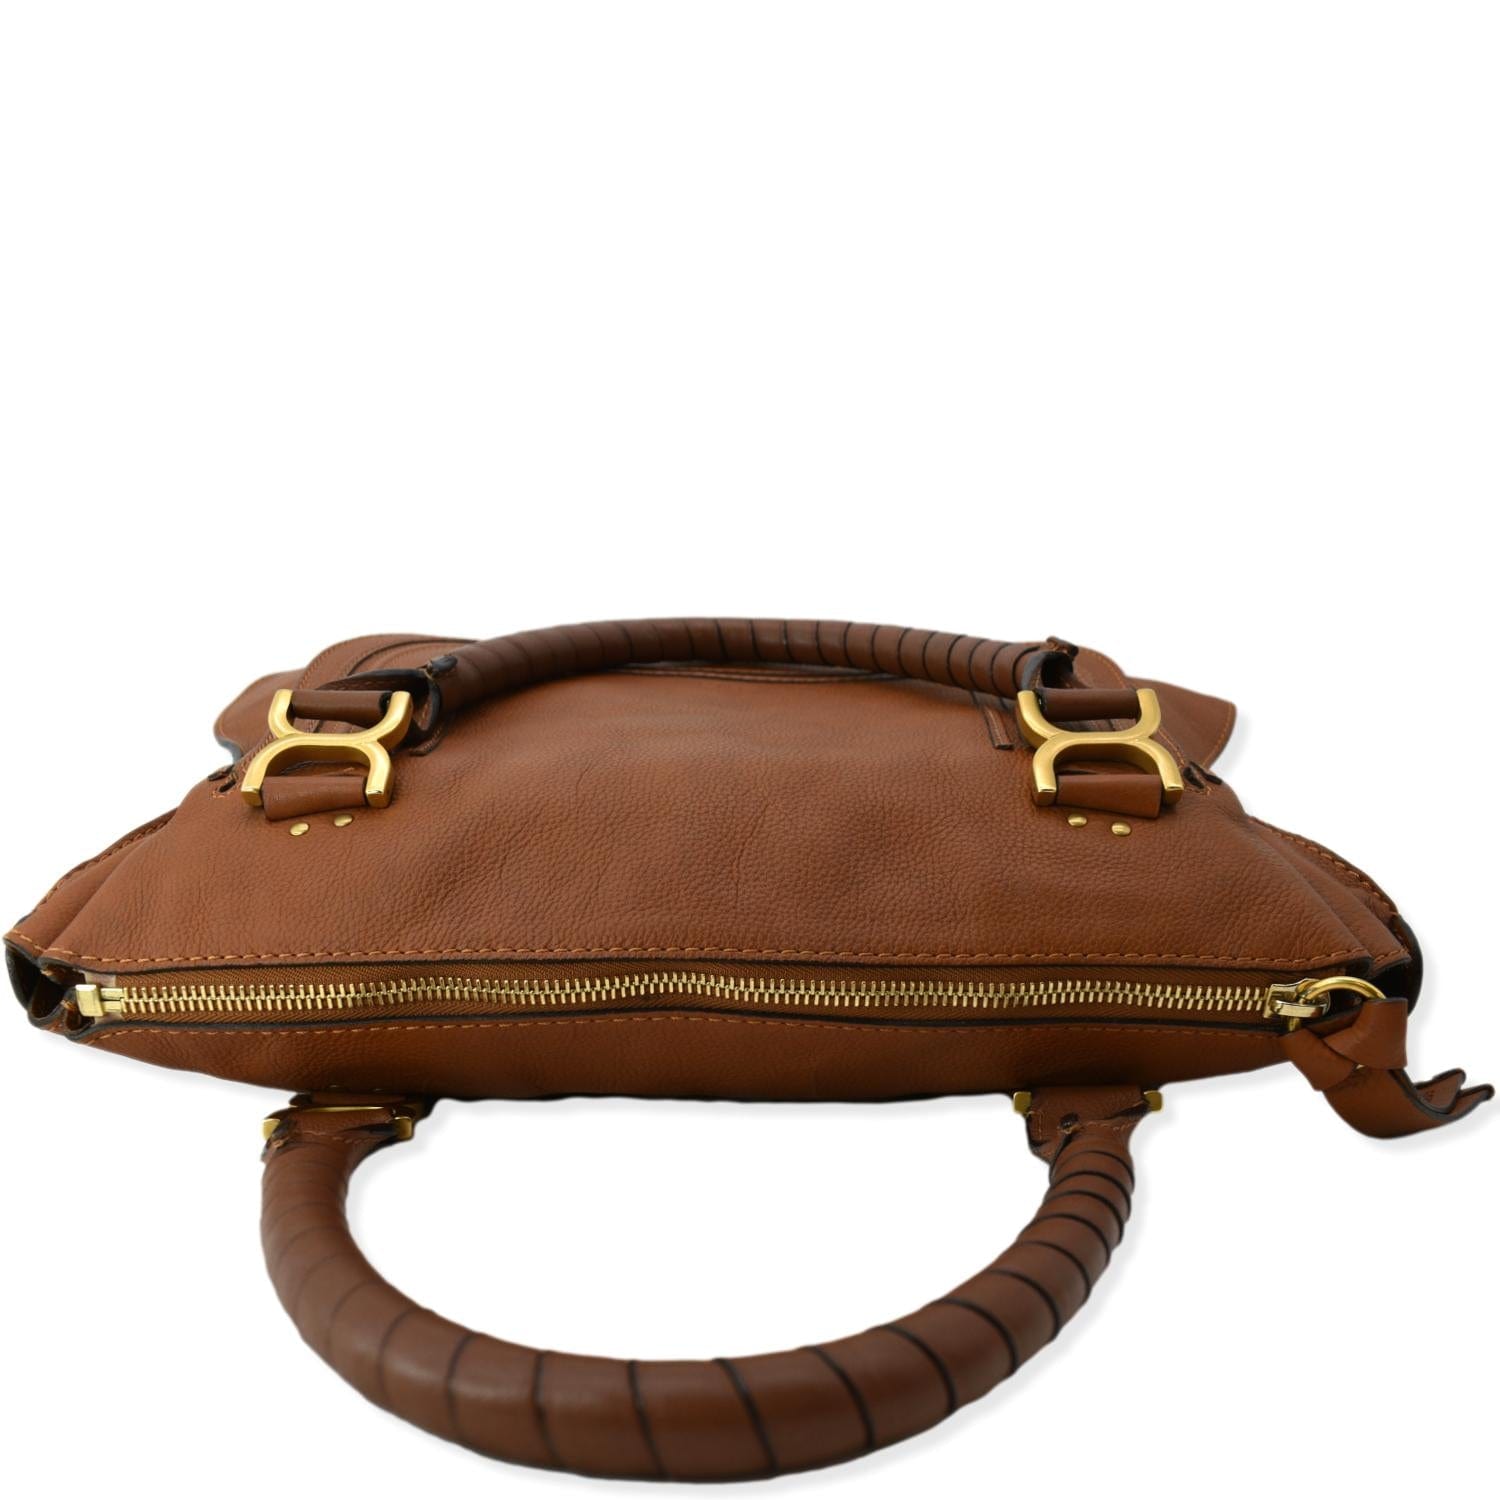 CHLOE Marcie Large Calfskin Leather Shoulder Bag Tan